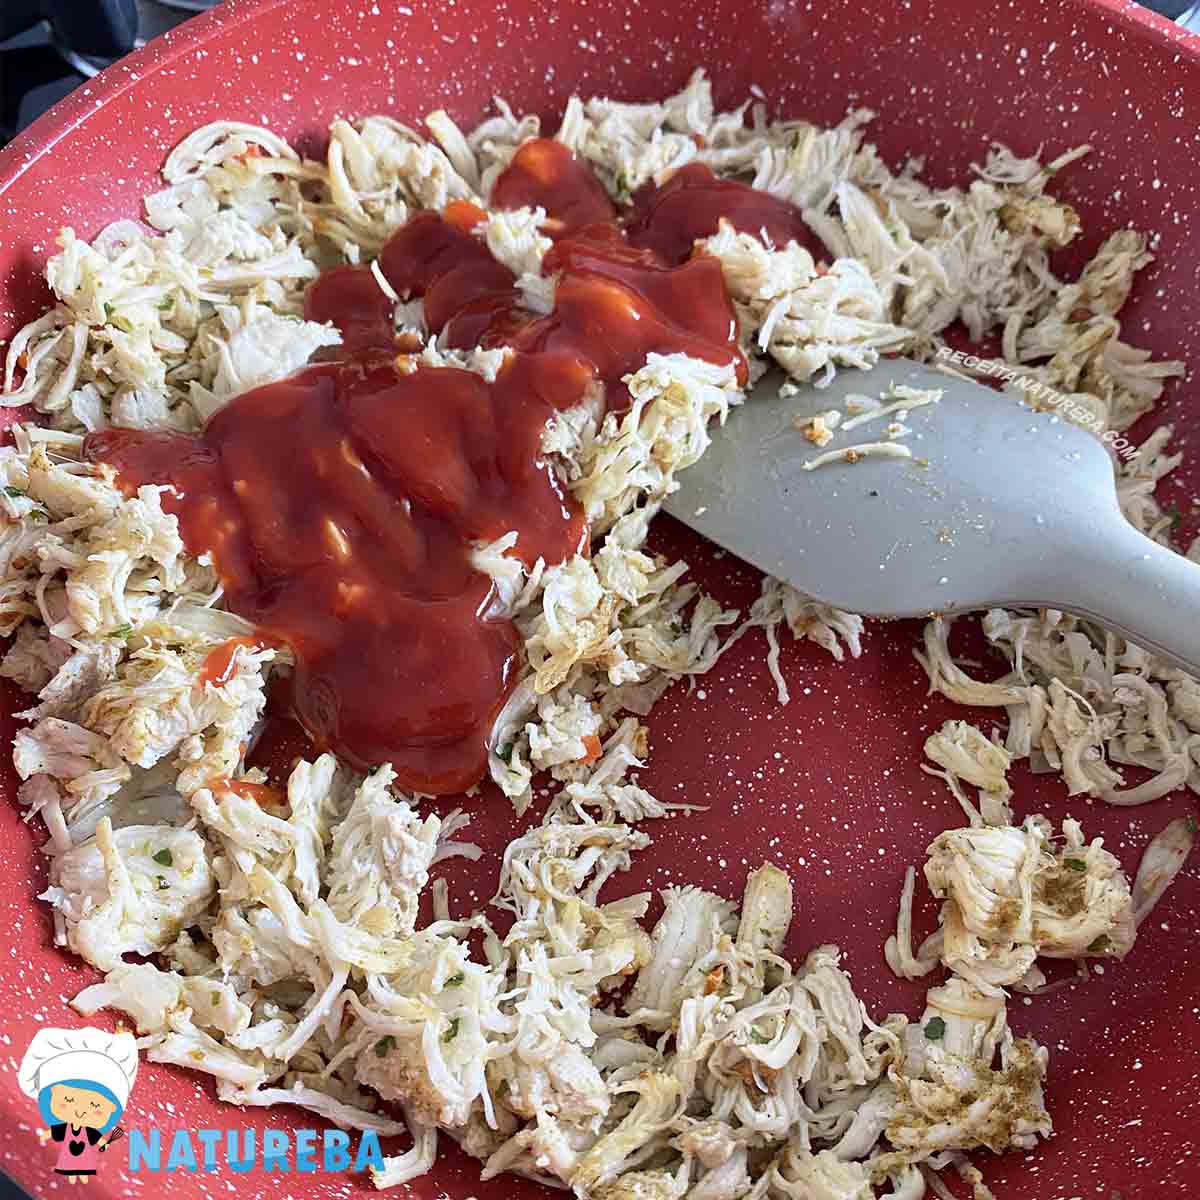 juntando o frango desfiado com o molho de tomate na panela com a cebola refogada